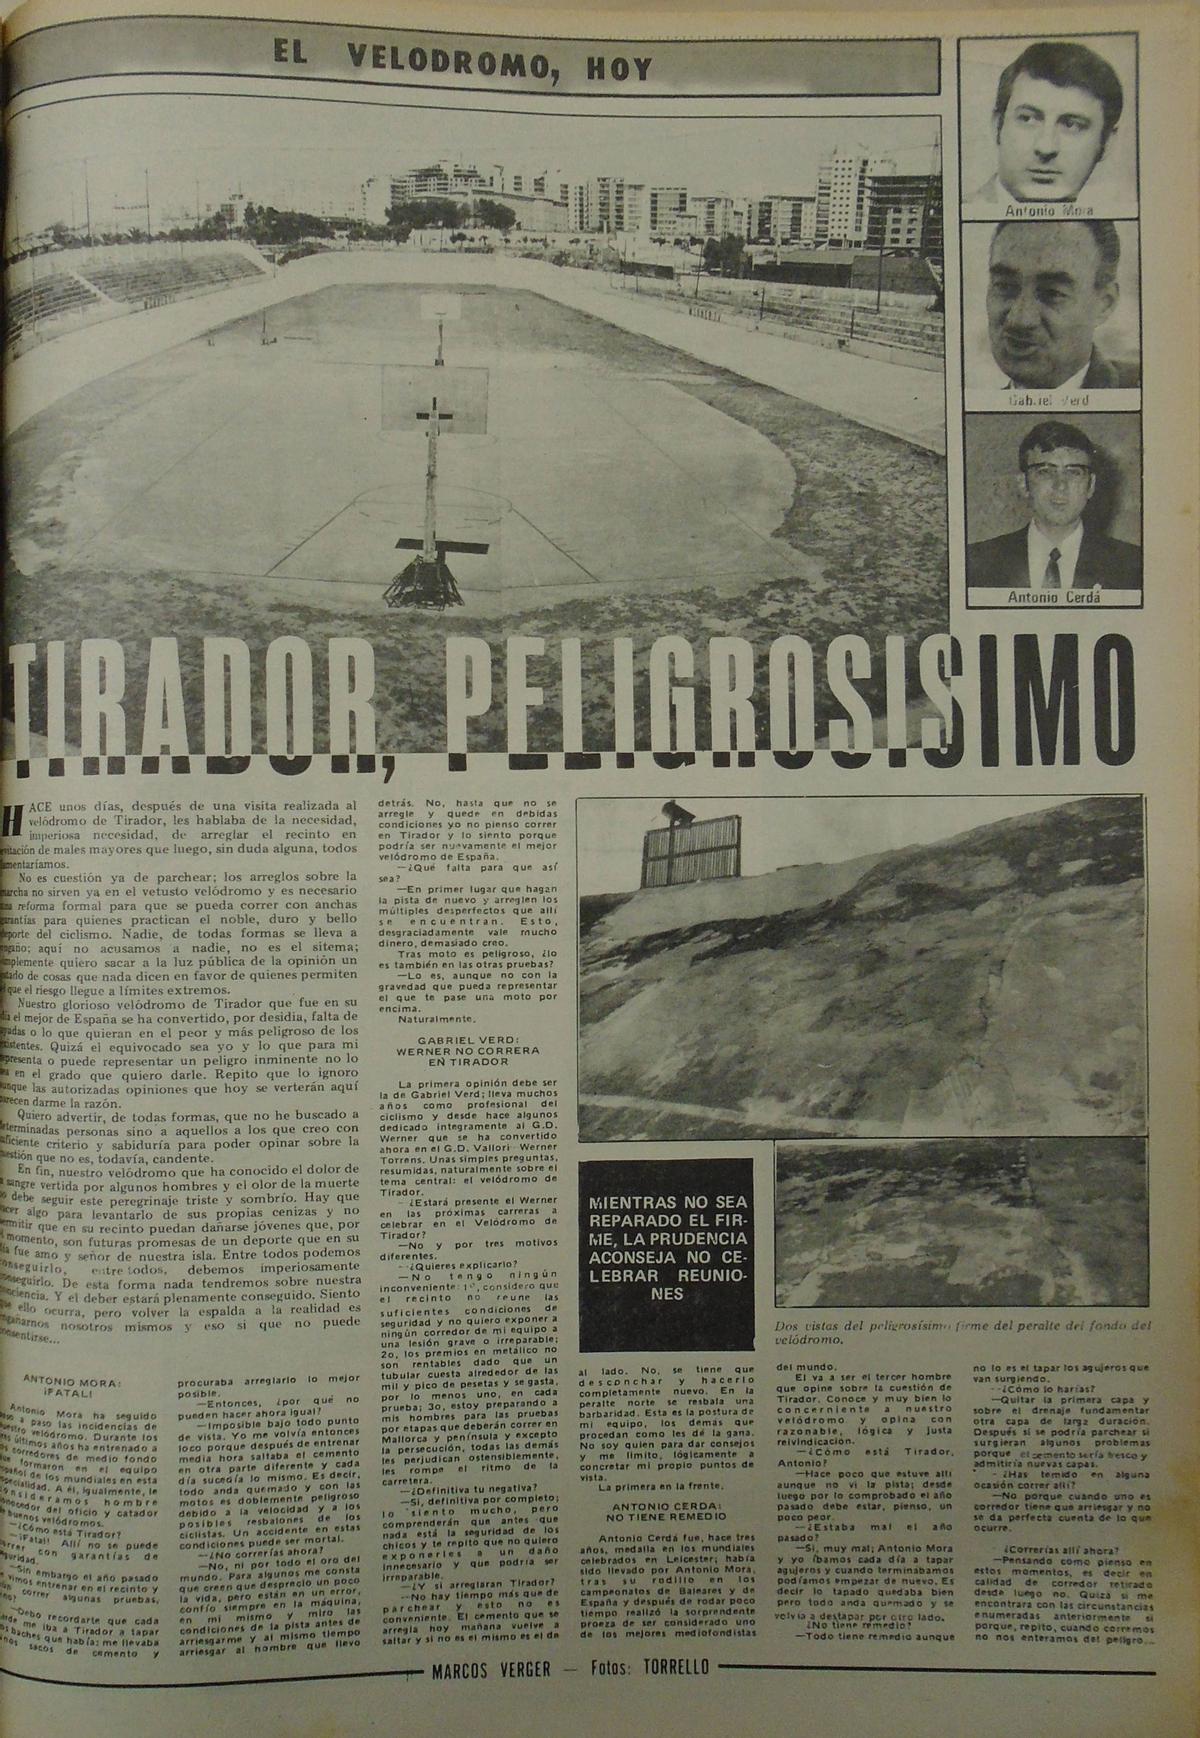 Ciclismo. Velódromo de Tirador. DM.24.03.1973